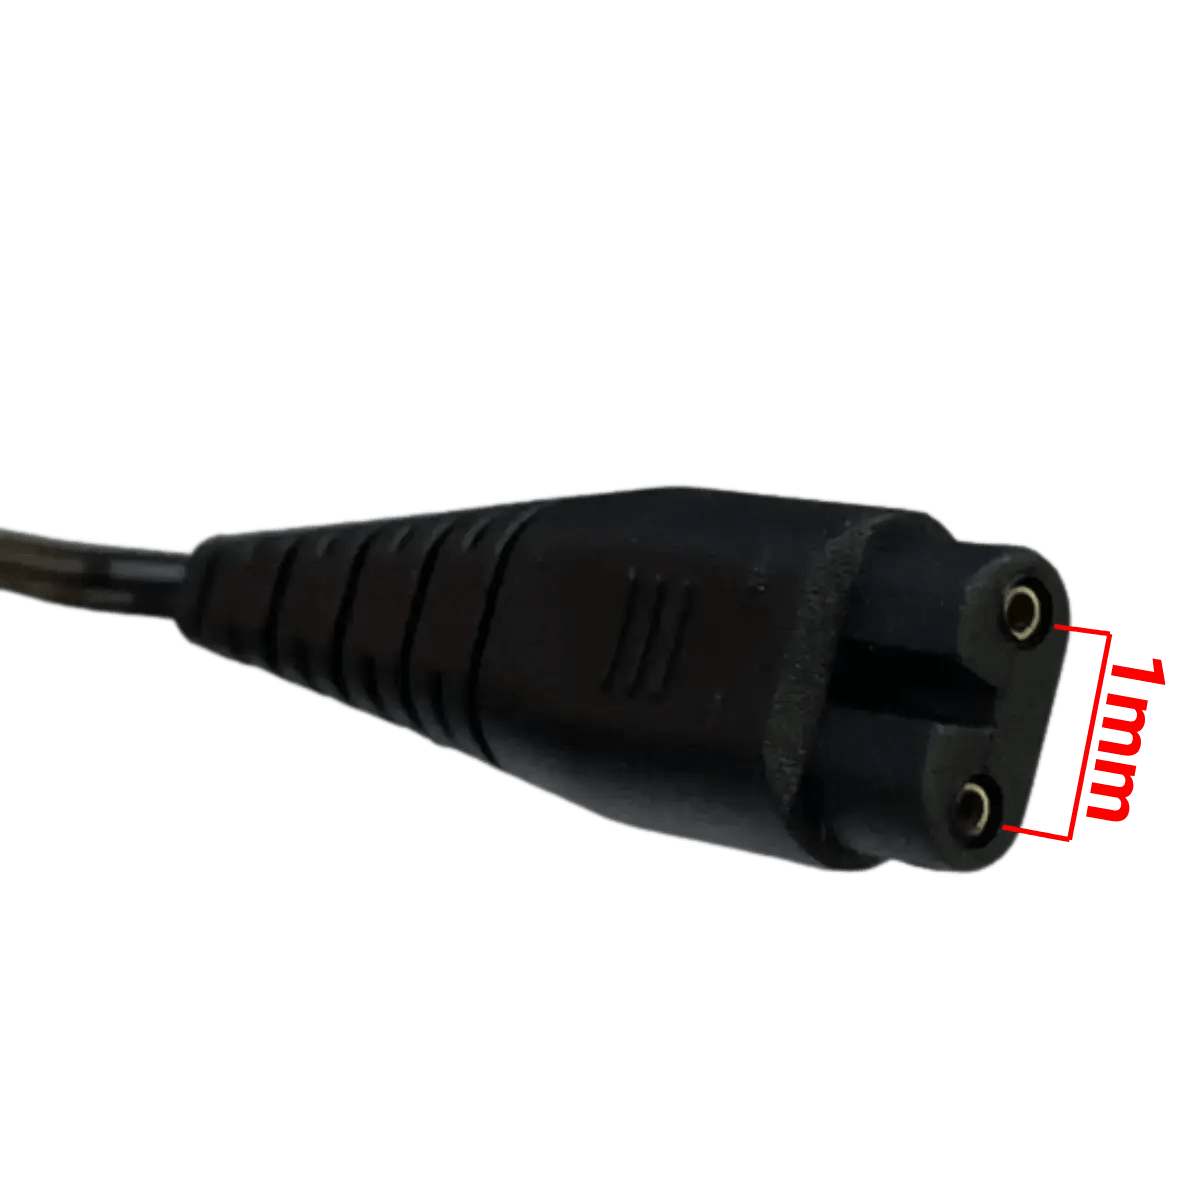 Câble USB pour rasoir Hatteker